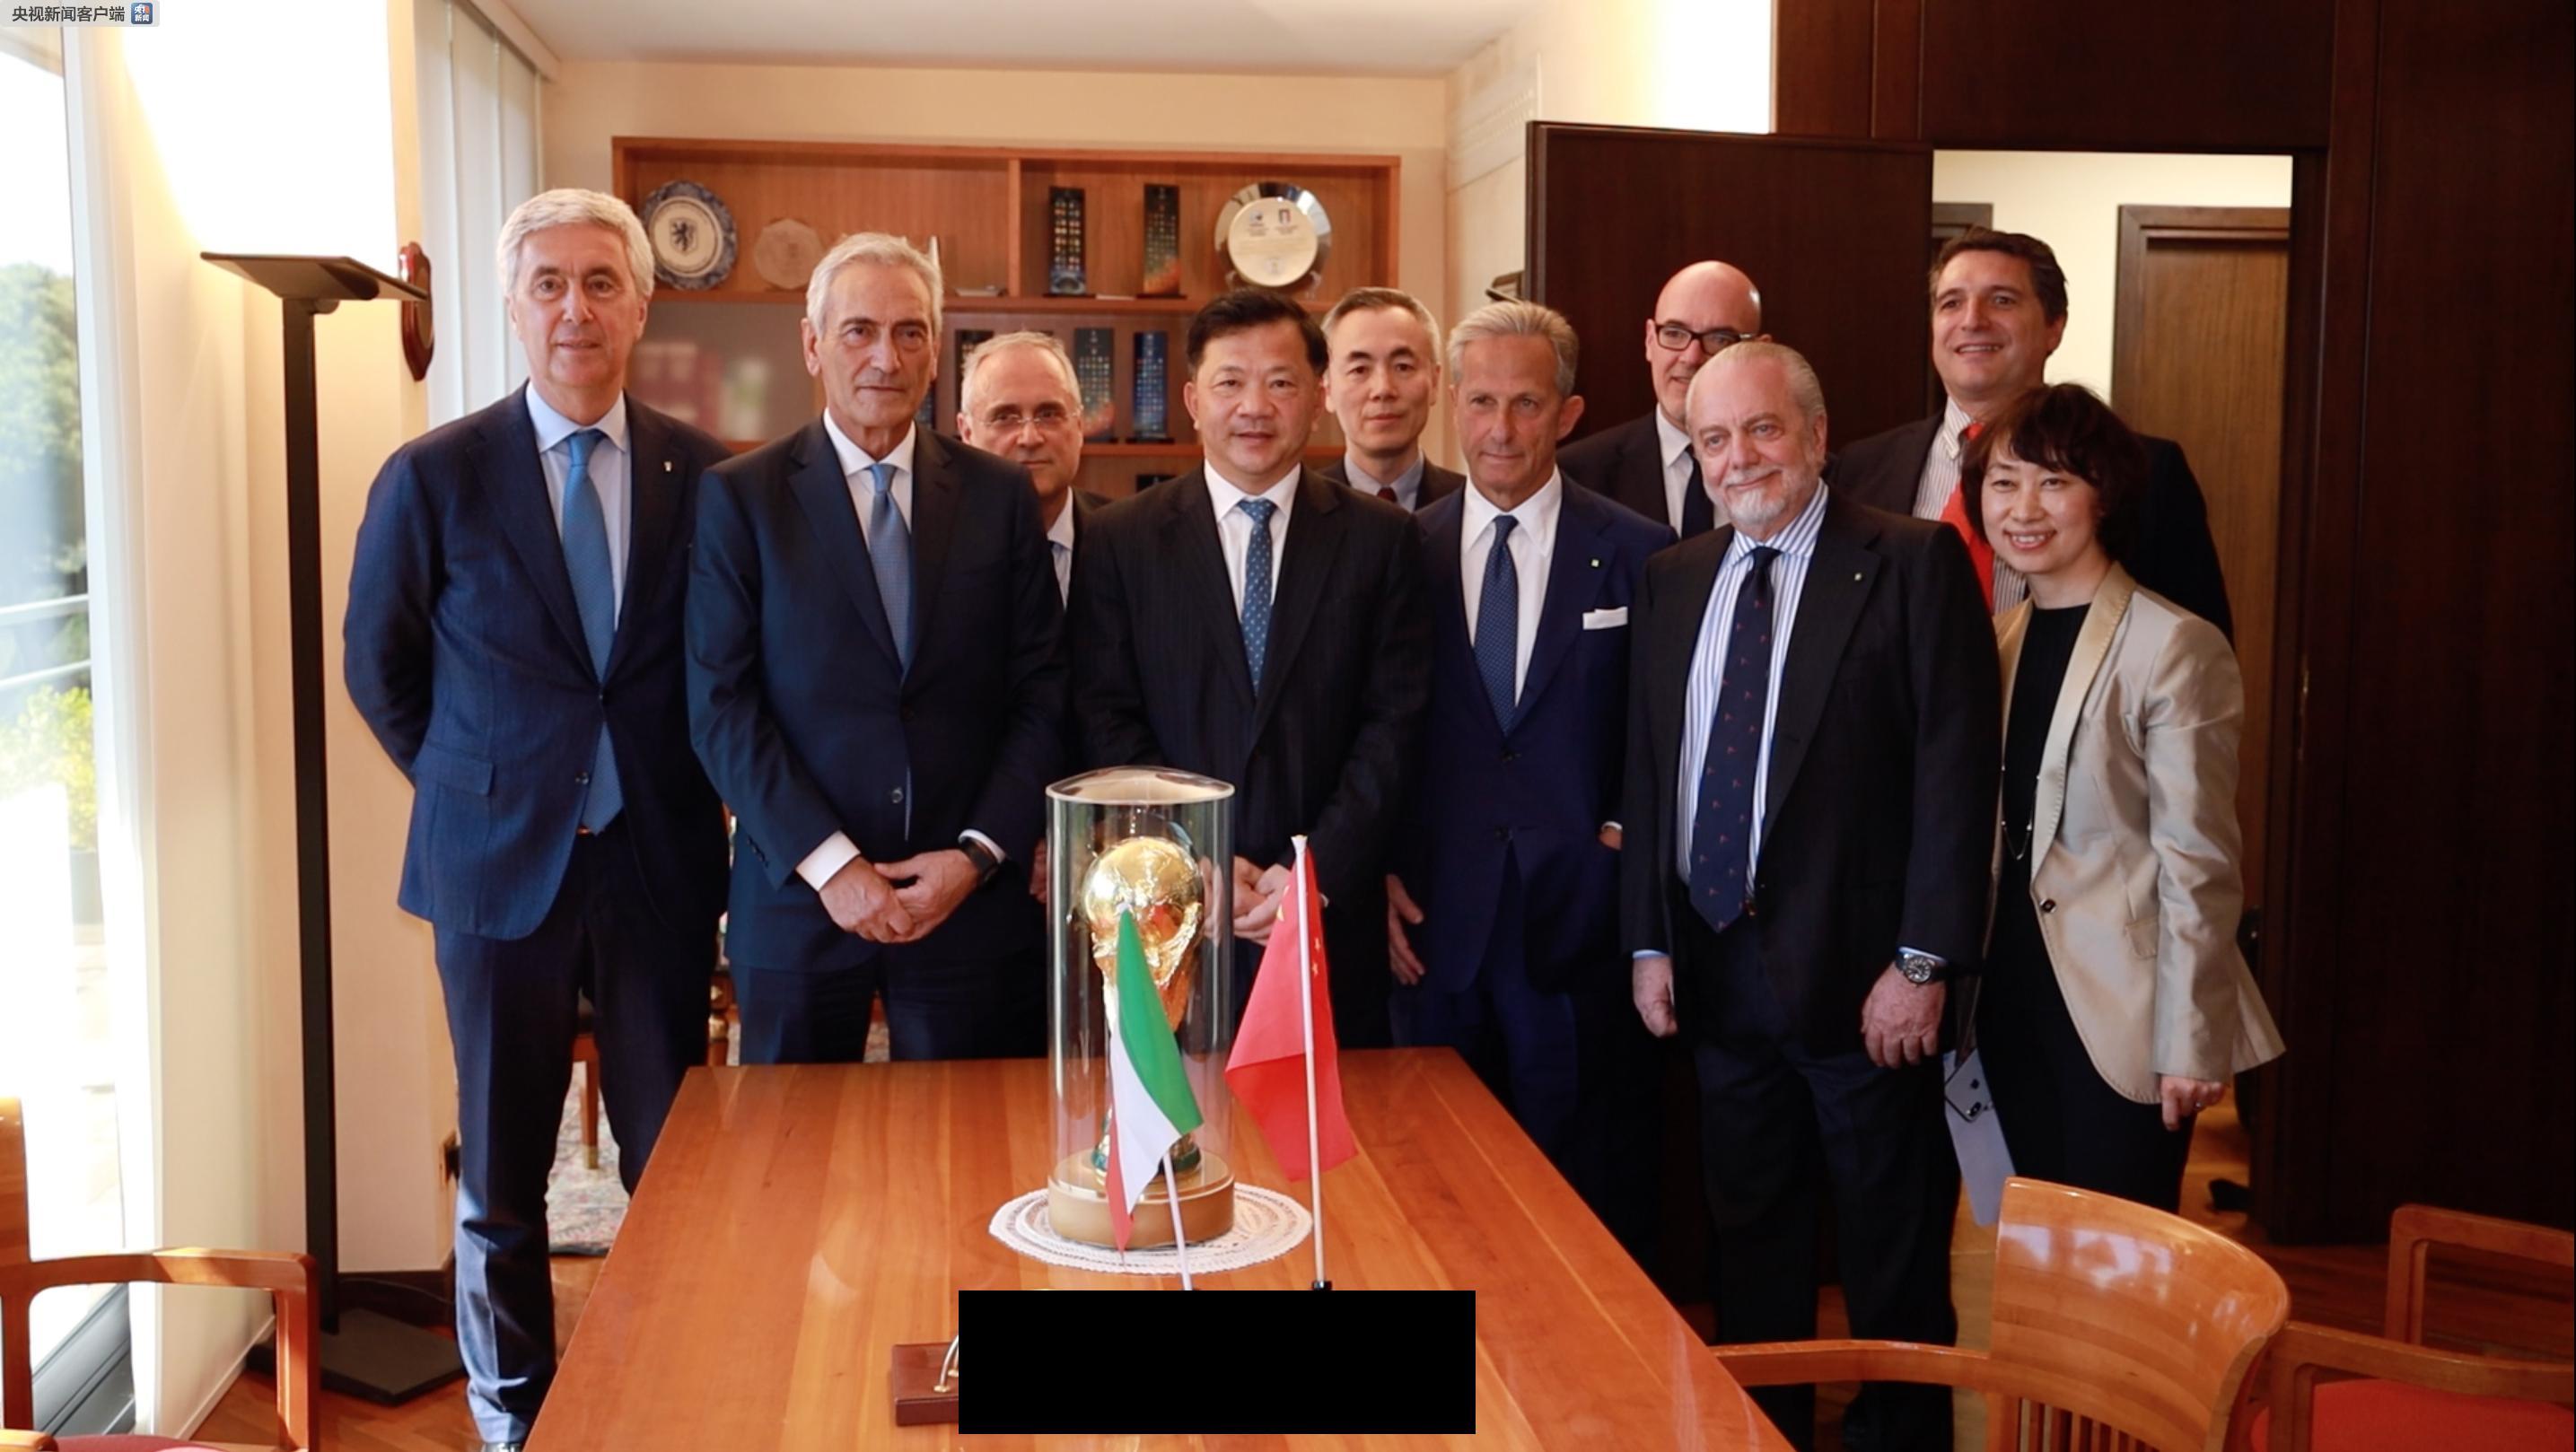 中央广播电视总台与意大利足球协会签署合作谅解备忘录 意甲联赛可望常态化进入中国